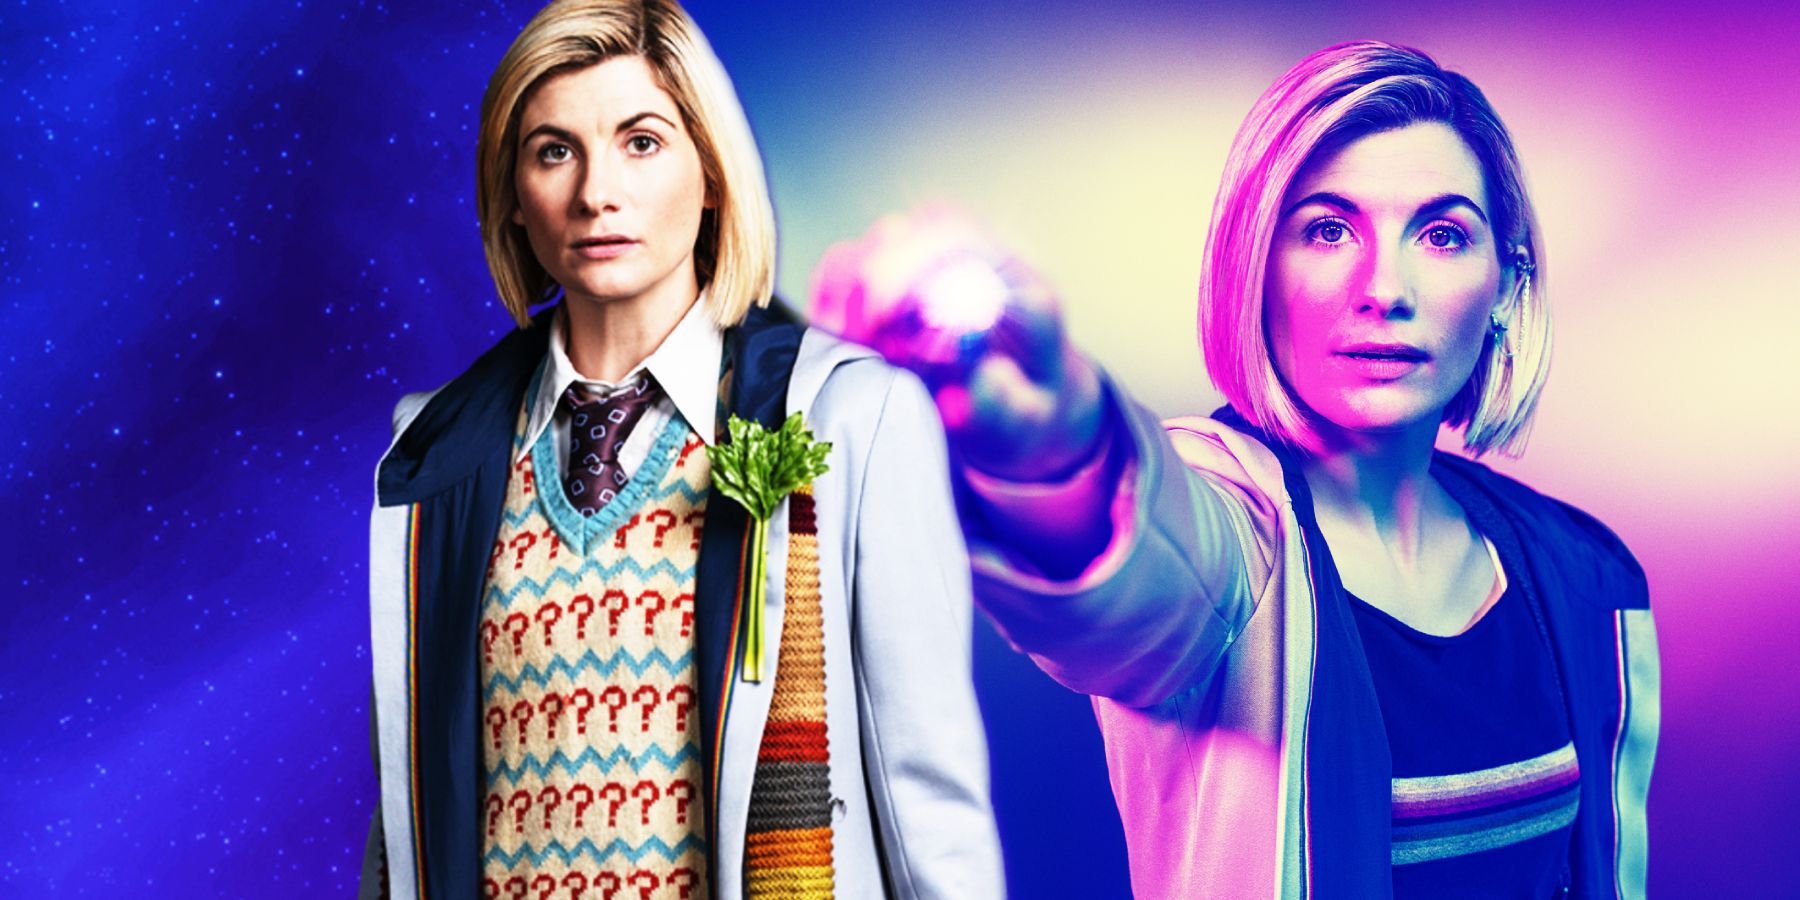 Dos mujeres interpretaron al Doctor Who antes del decimotercer doctor de Jodie Whittaker